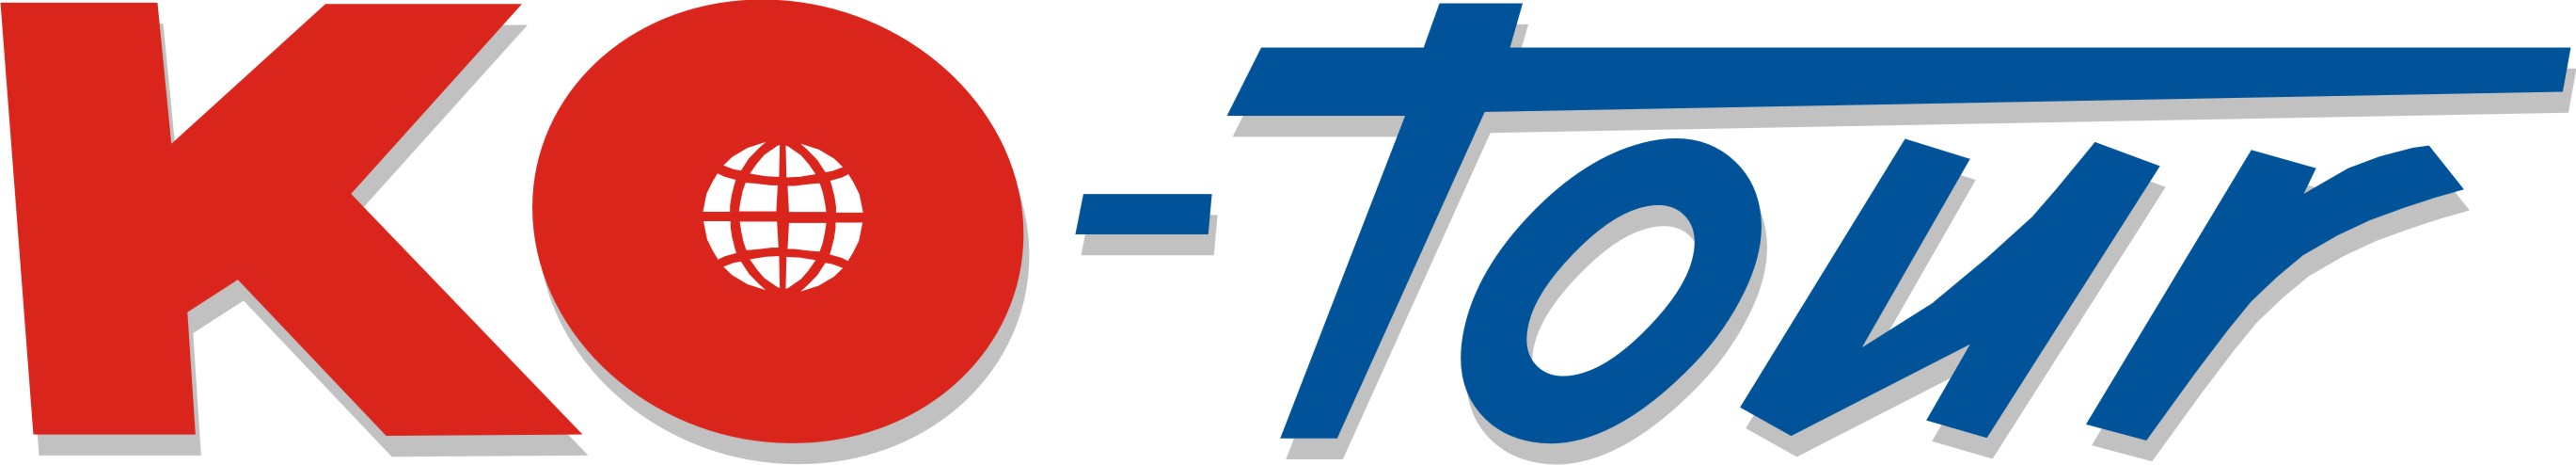 Logo14 tmp.jpg